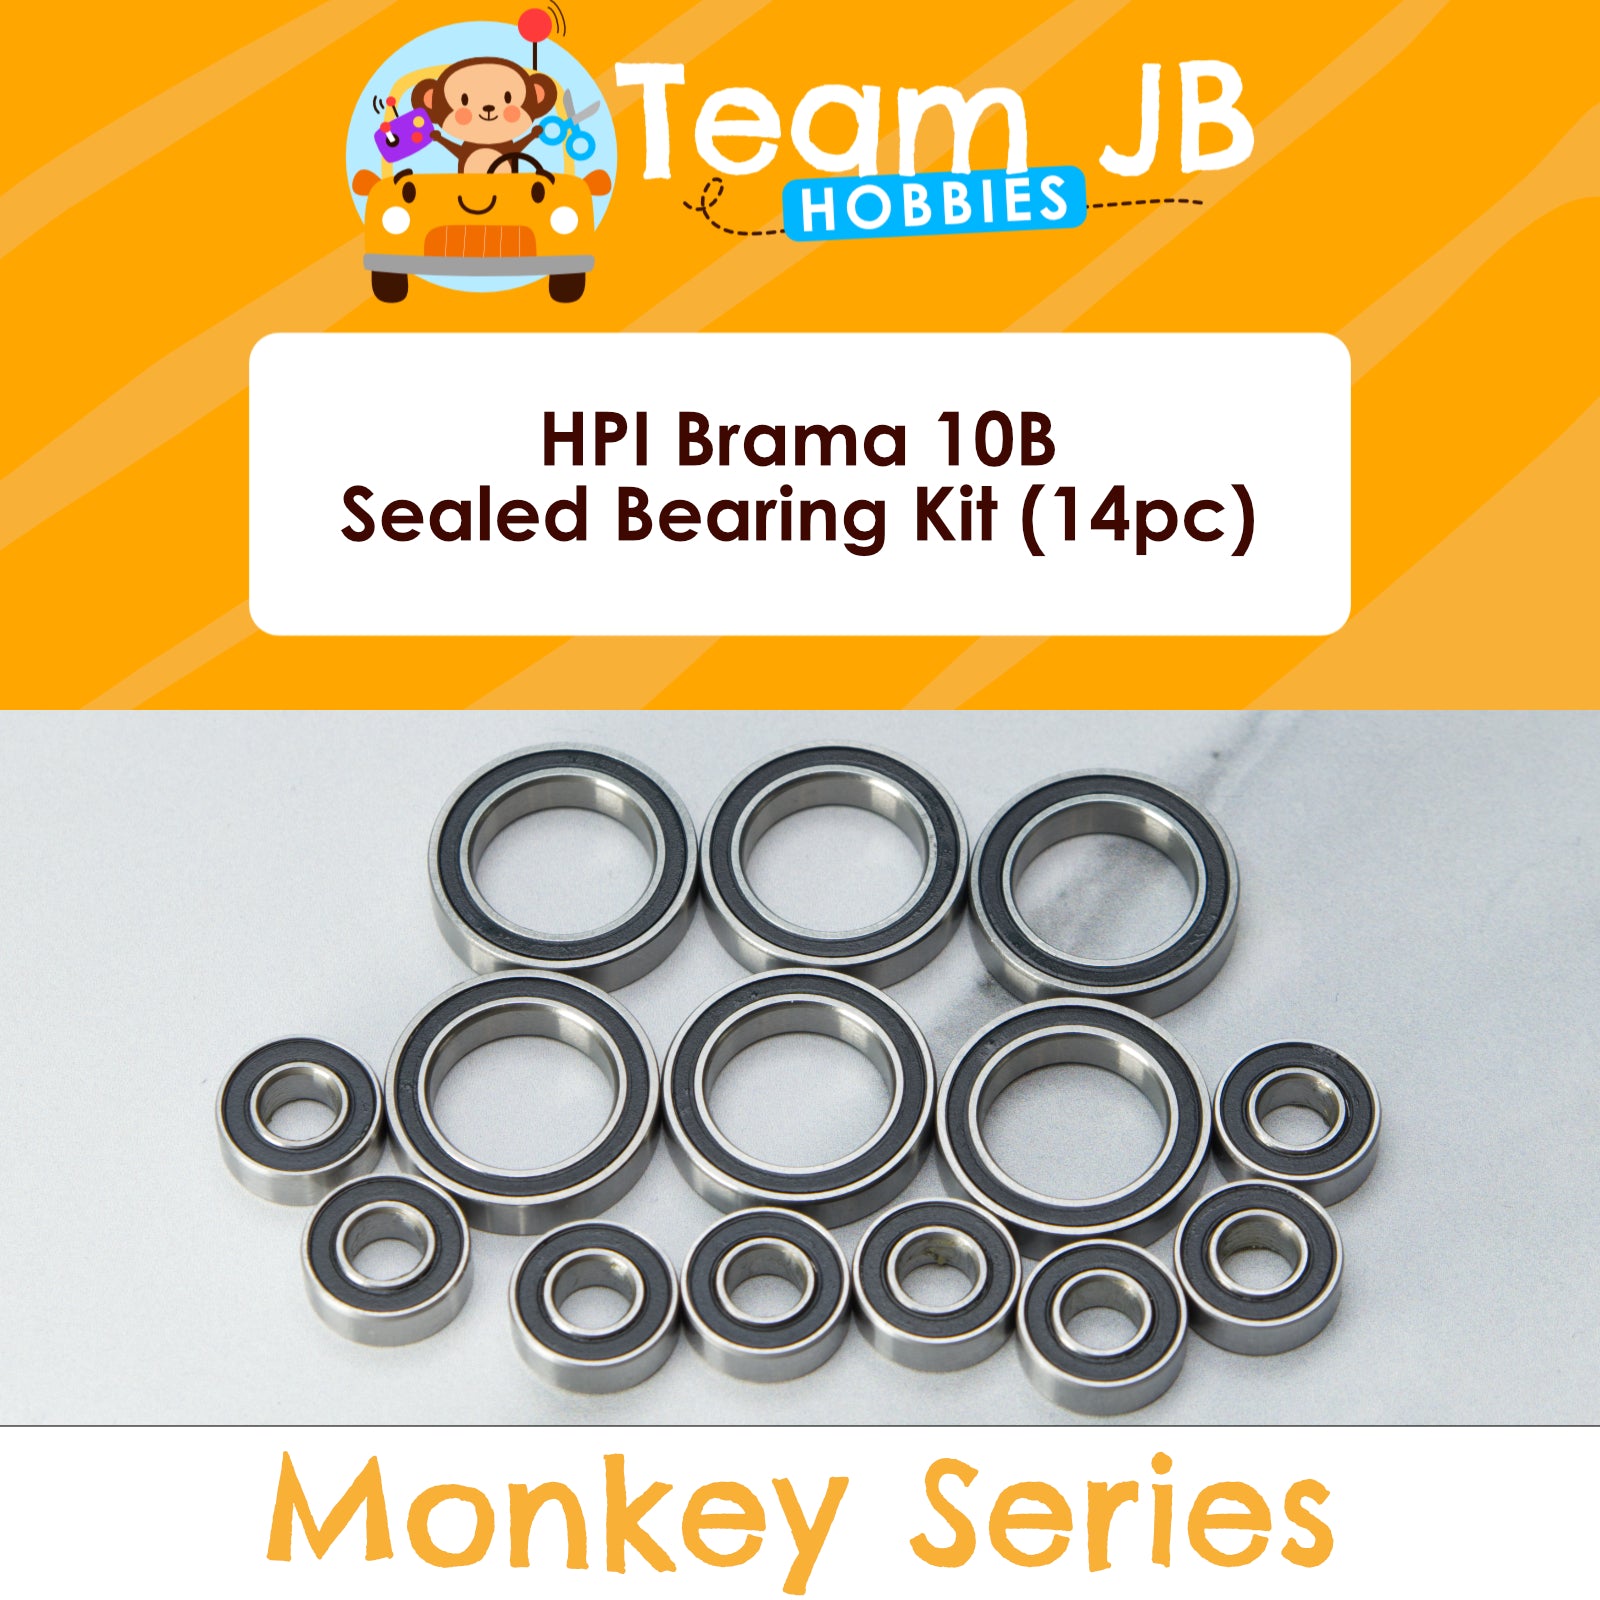 HPI Brama 10B - Sealed Bearing Kit